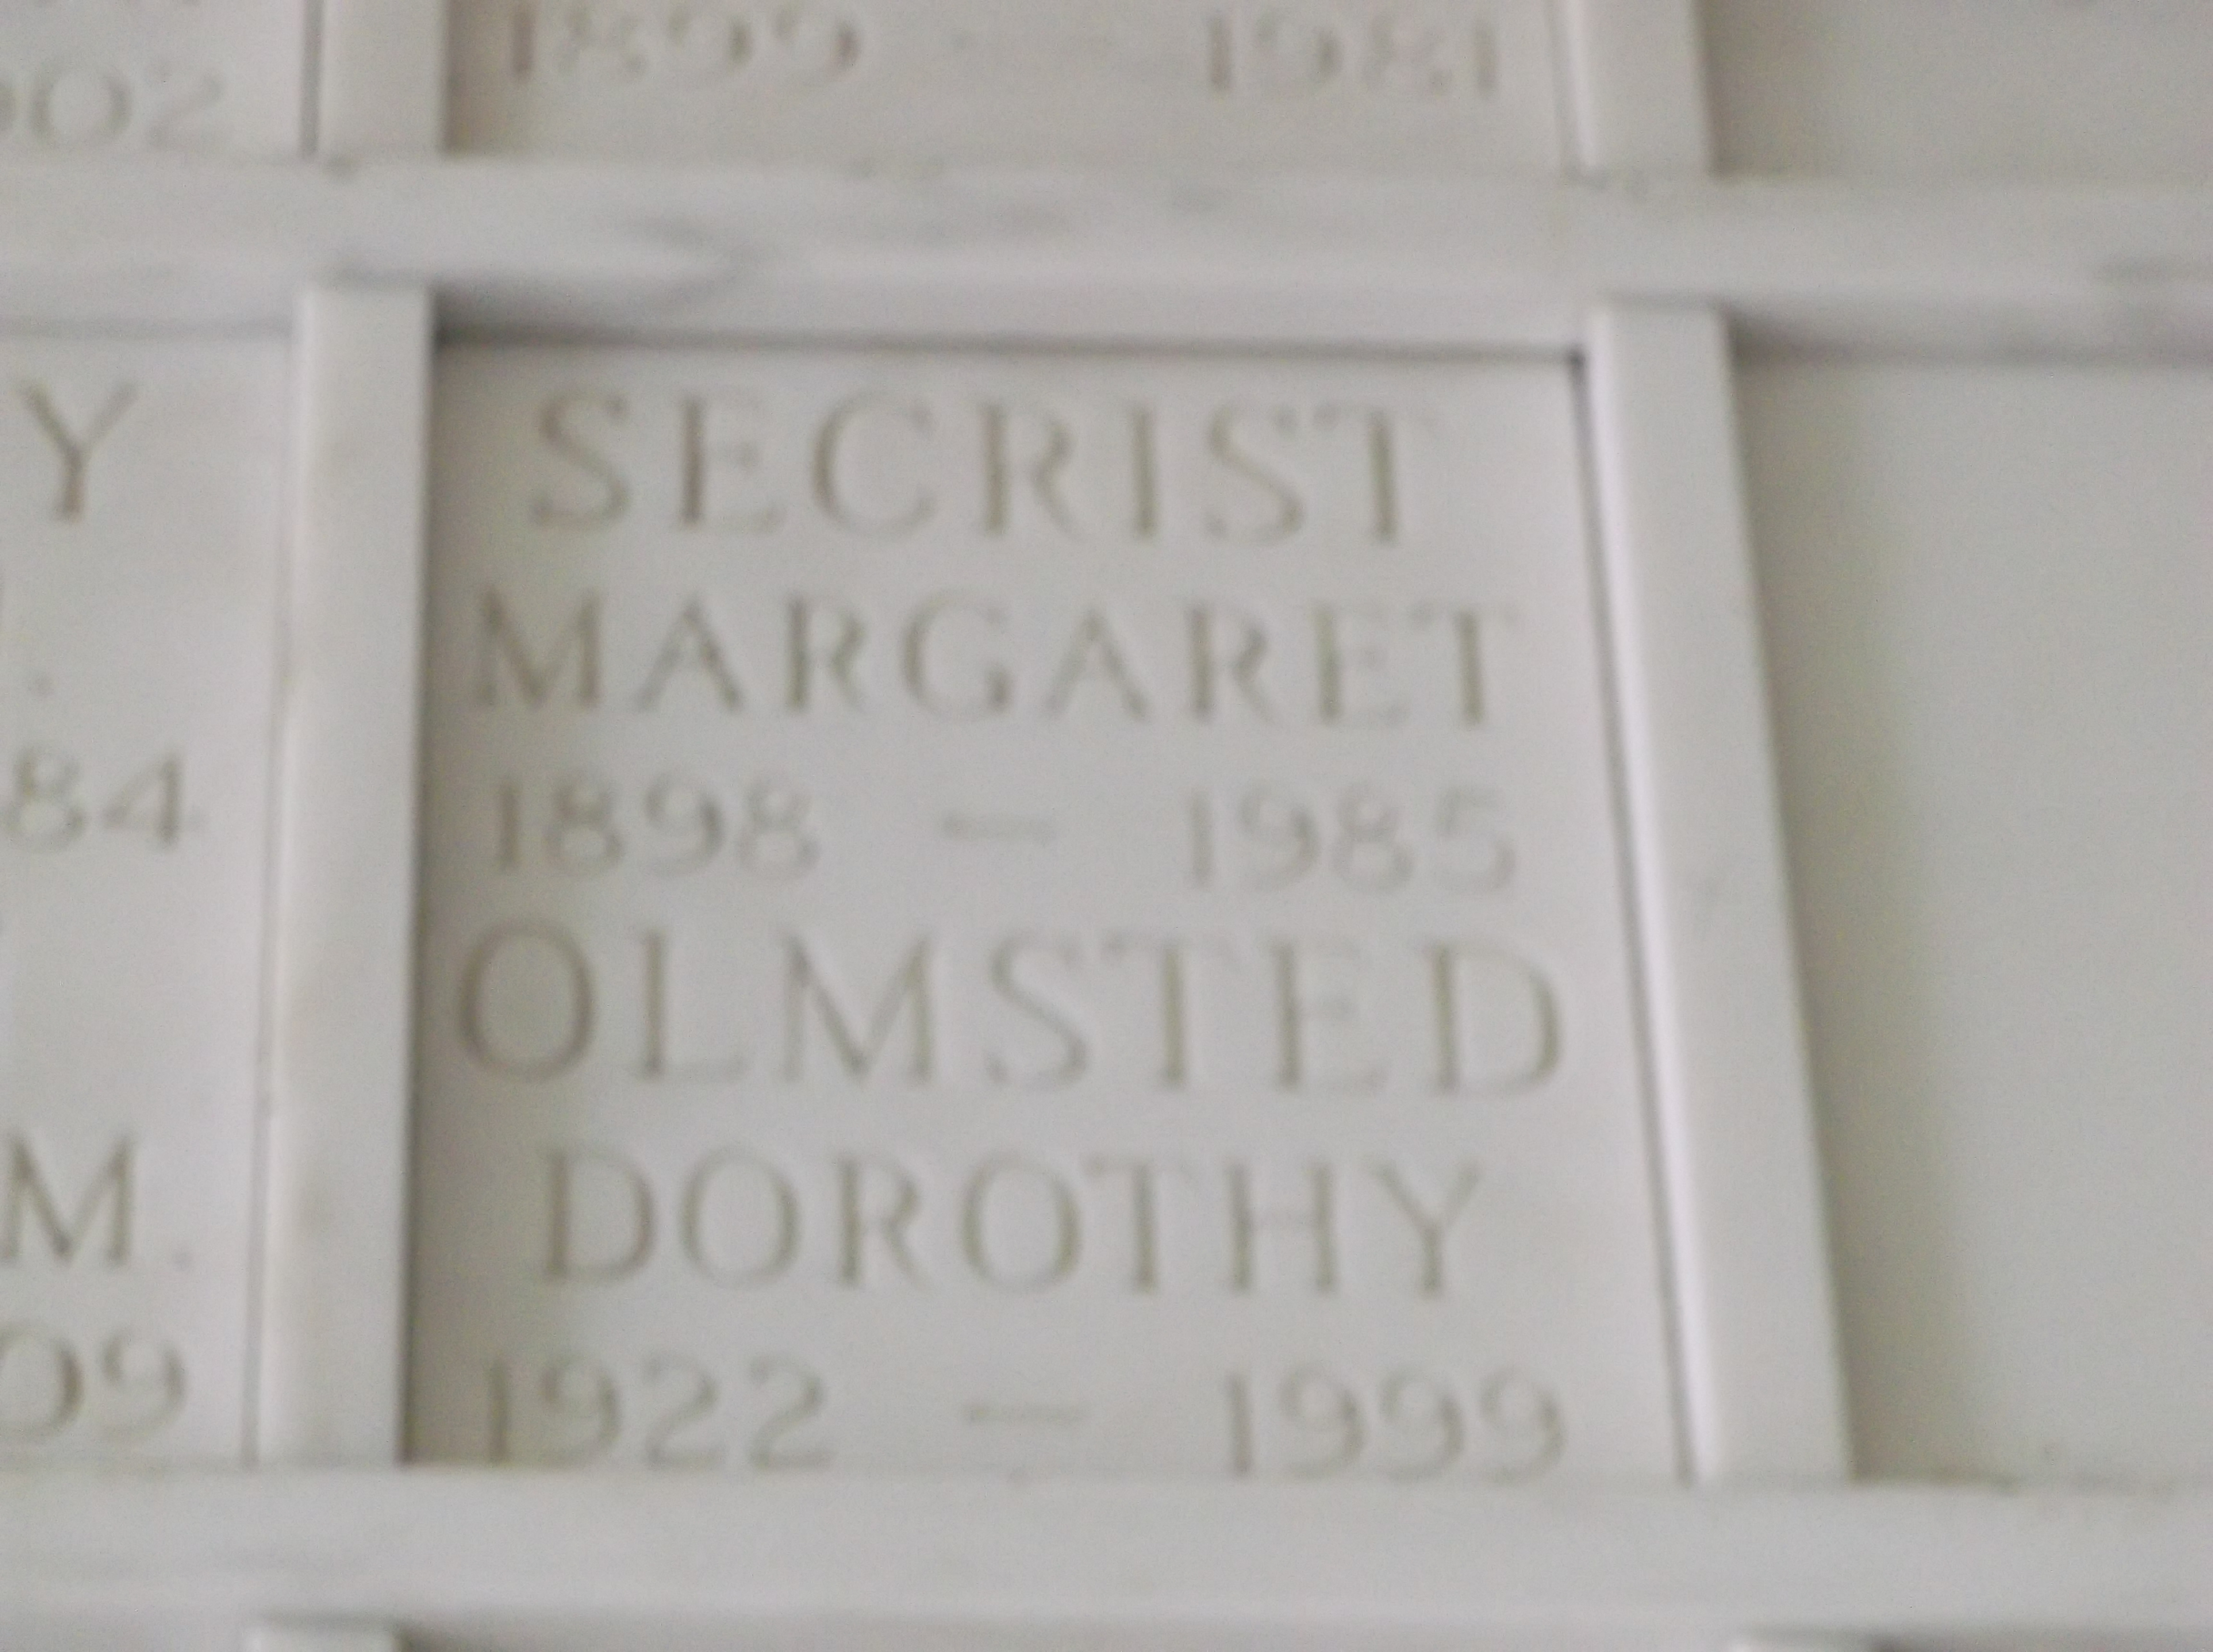 Margaret Secrist